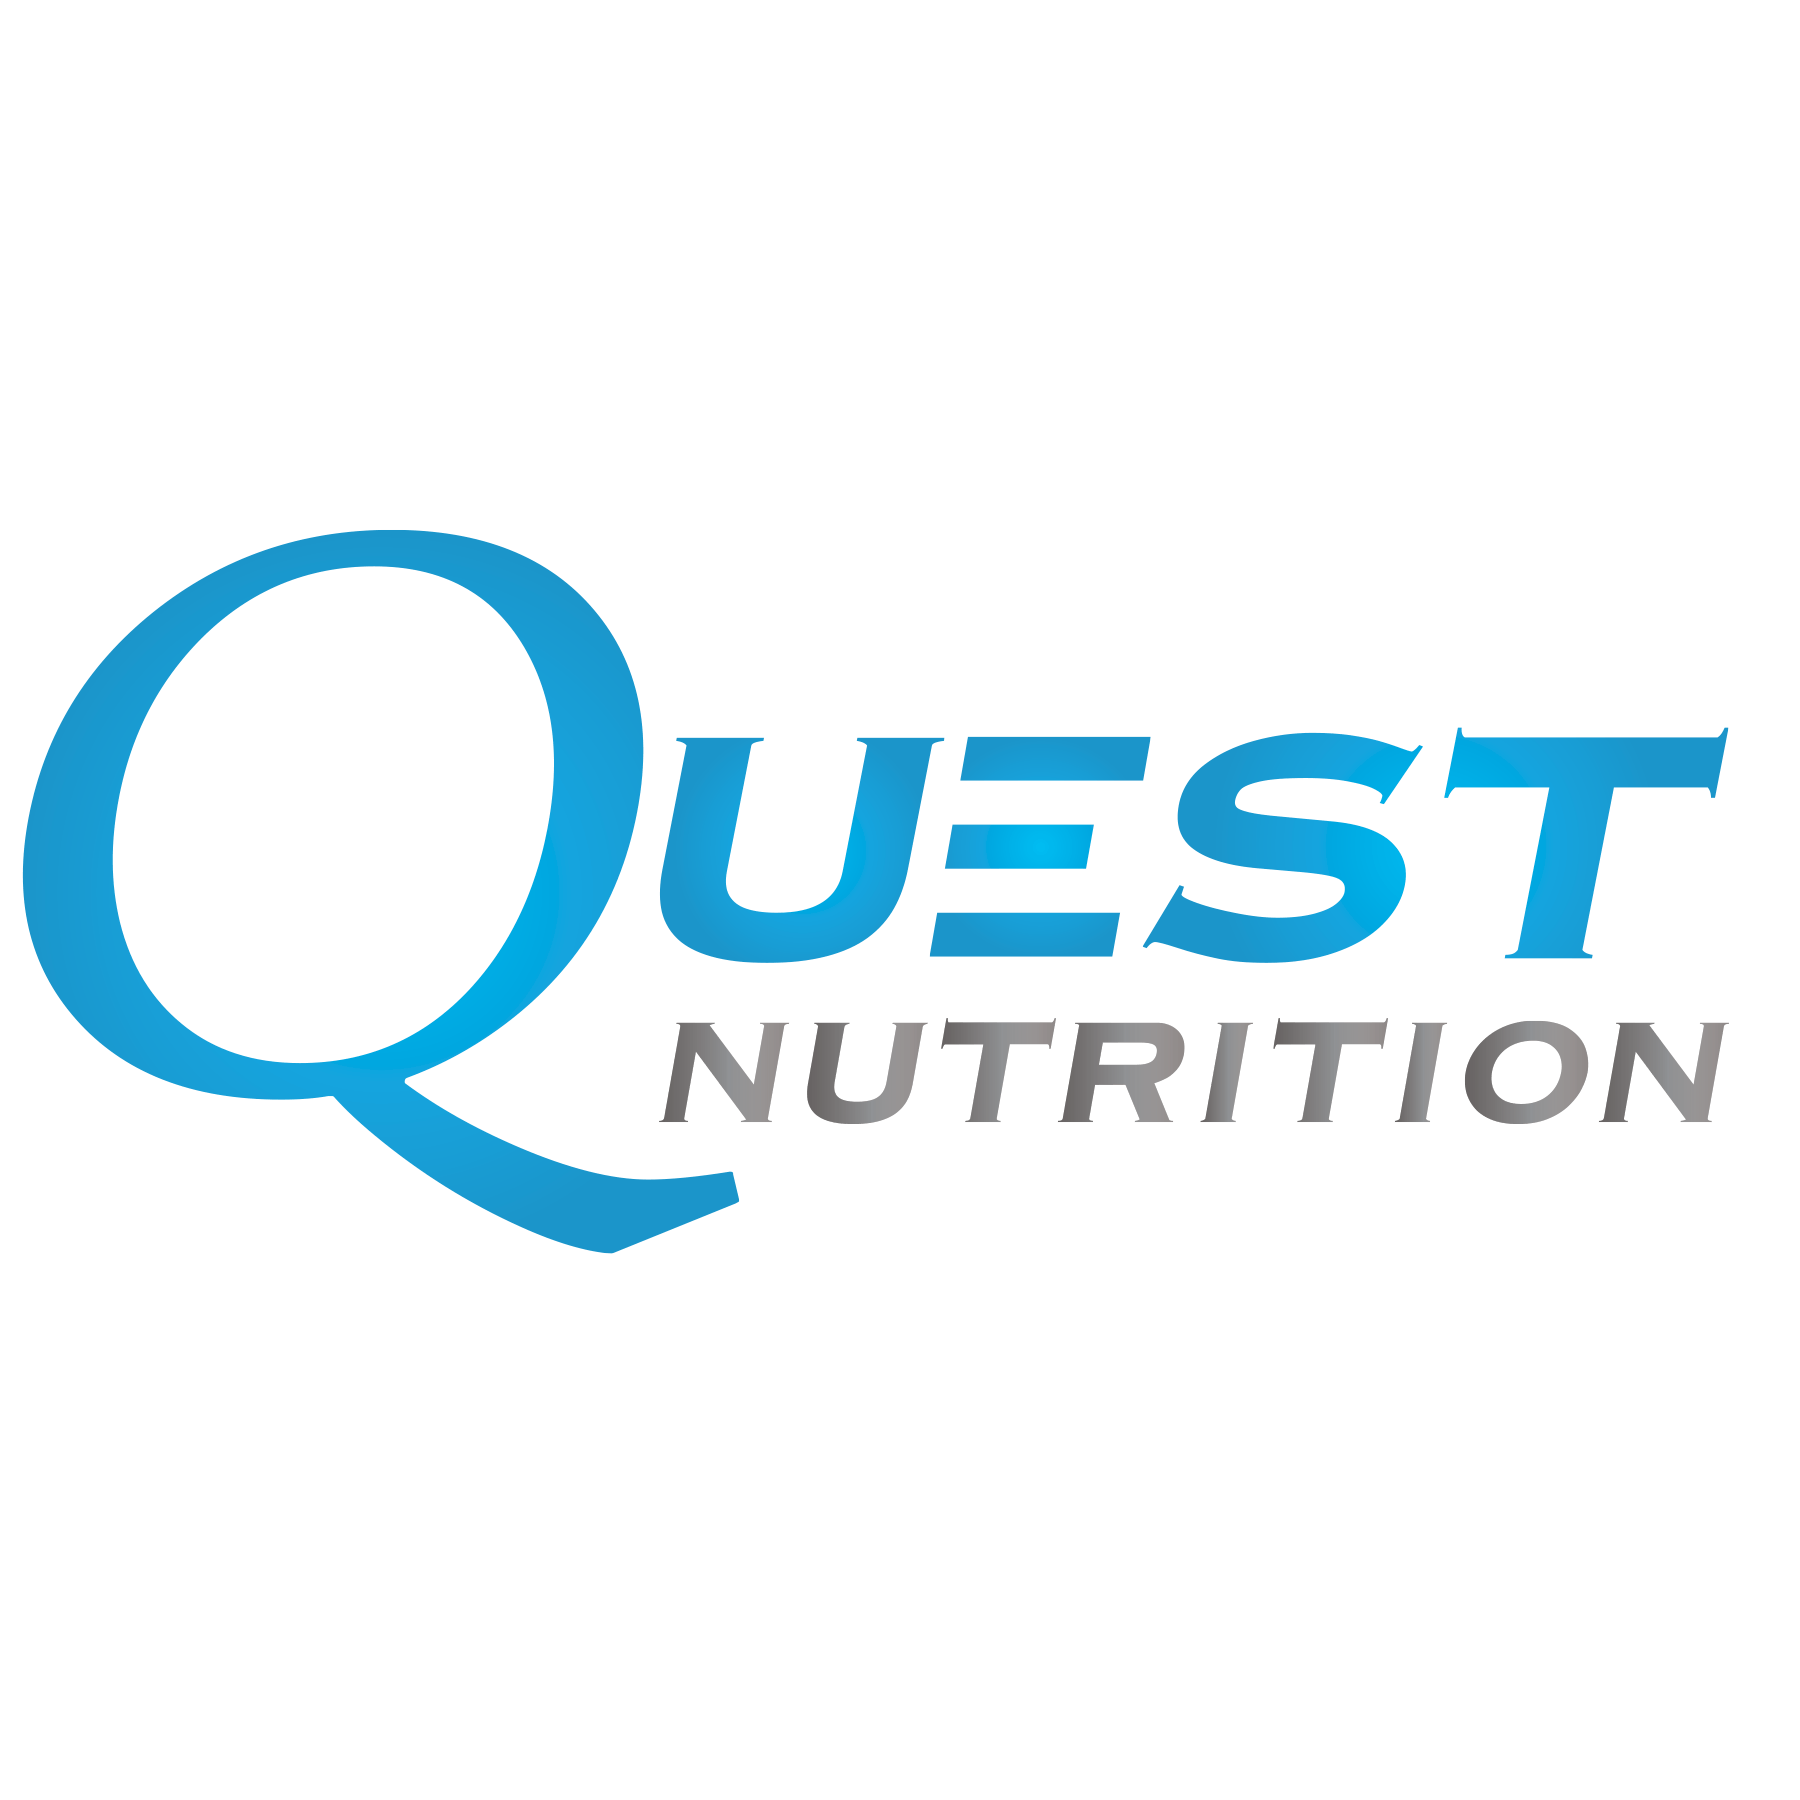 Quest Logo - Quest Nutrition Worx Australia